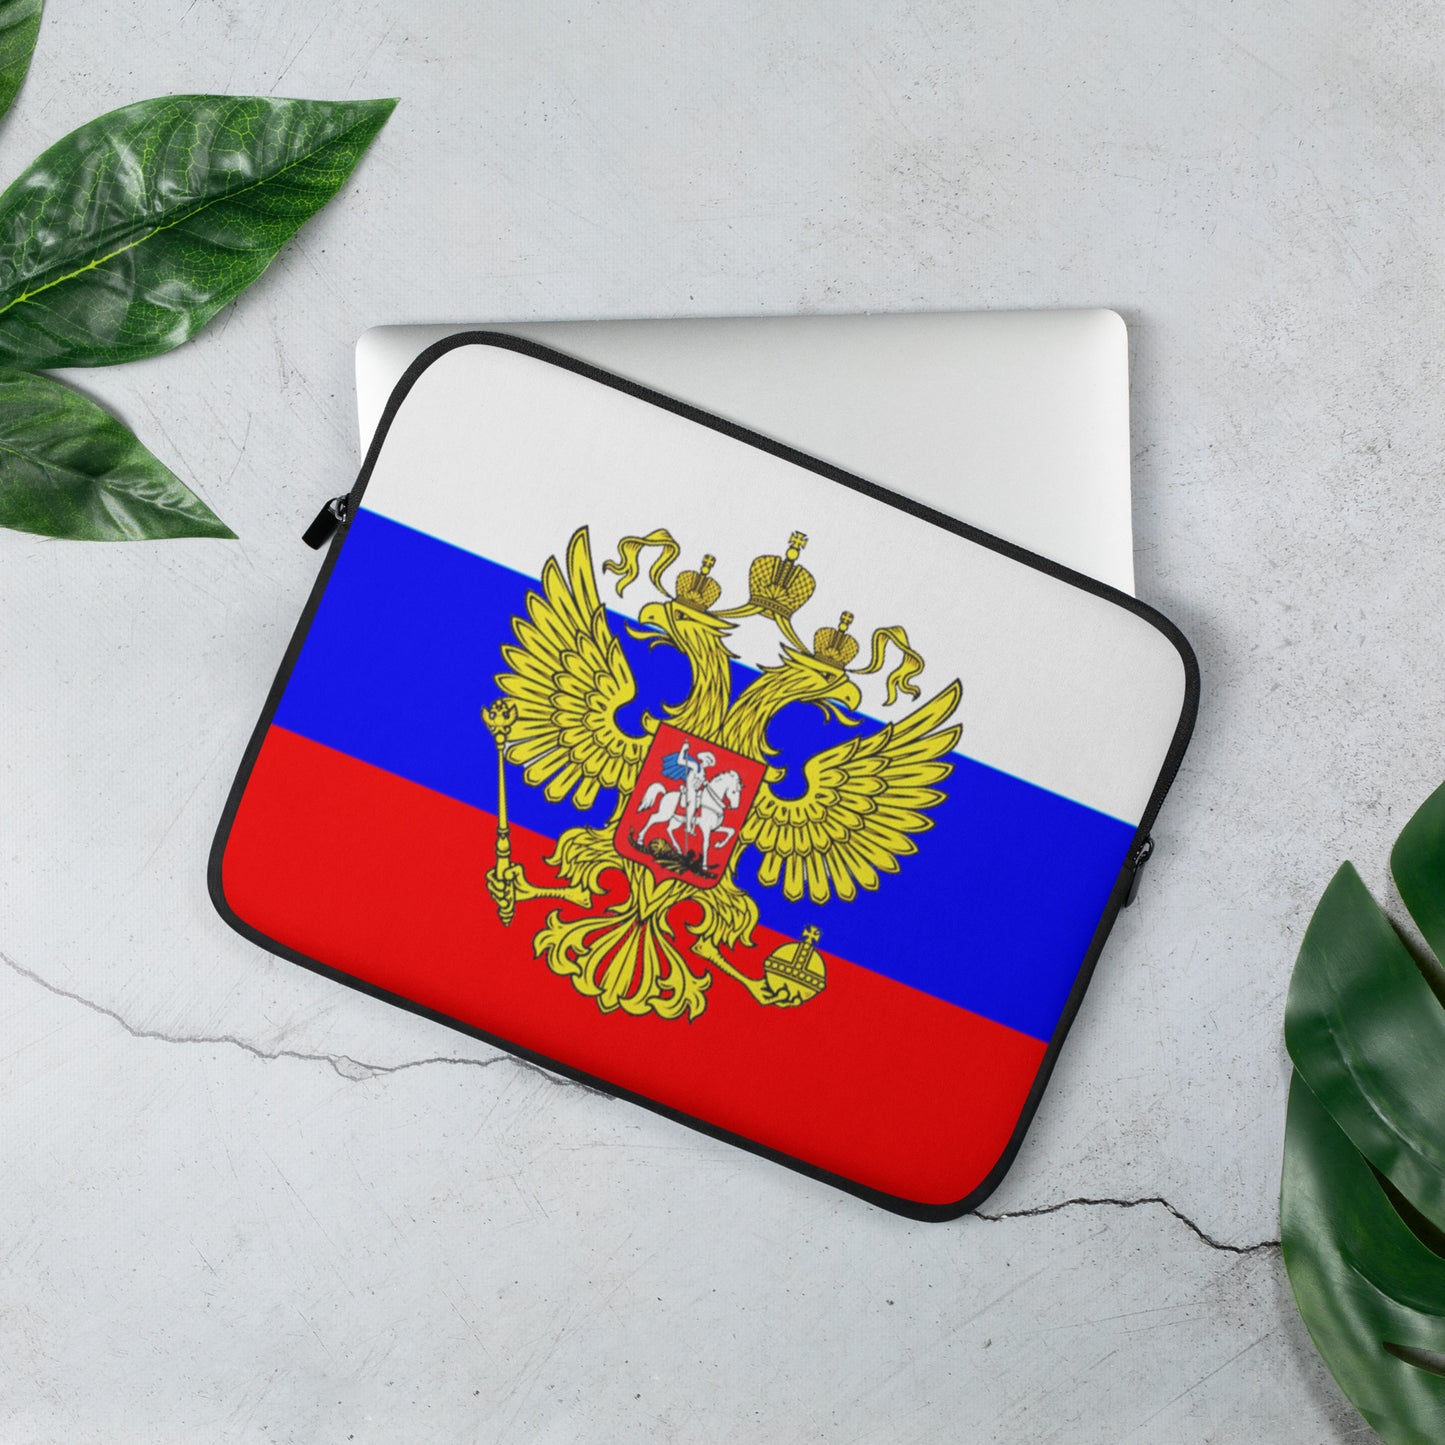 Laptop-Tasche in Farben der Russischen Flagge mit Wappen